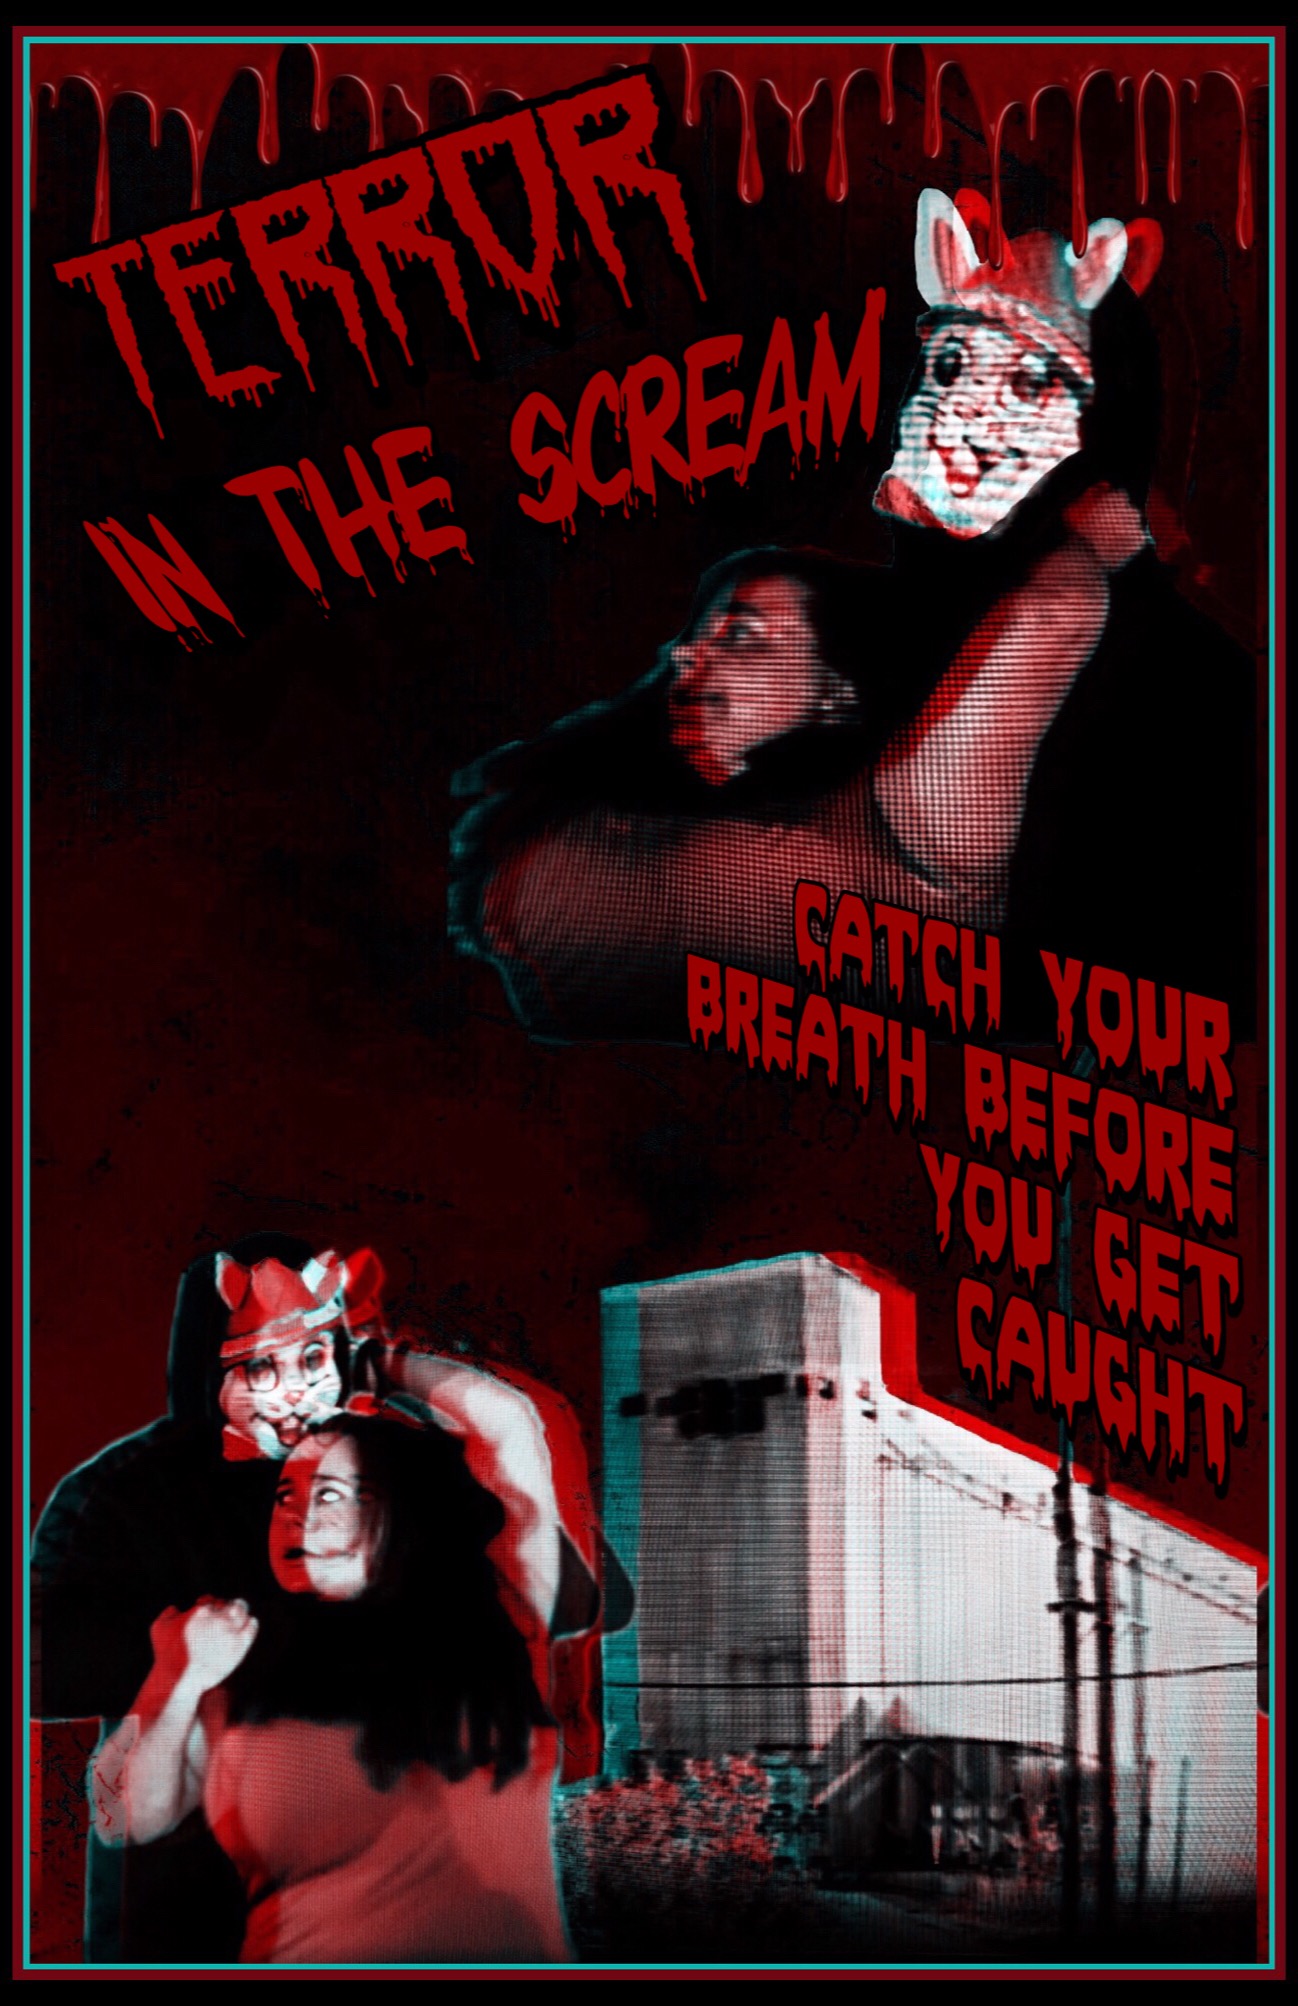 Terror in the Scream